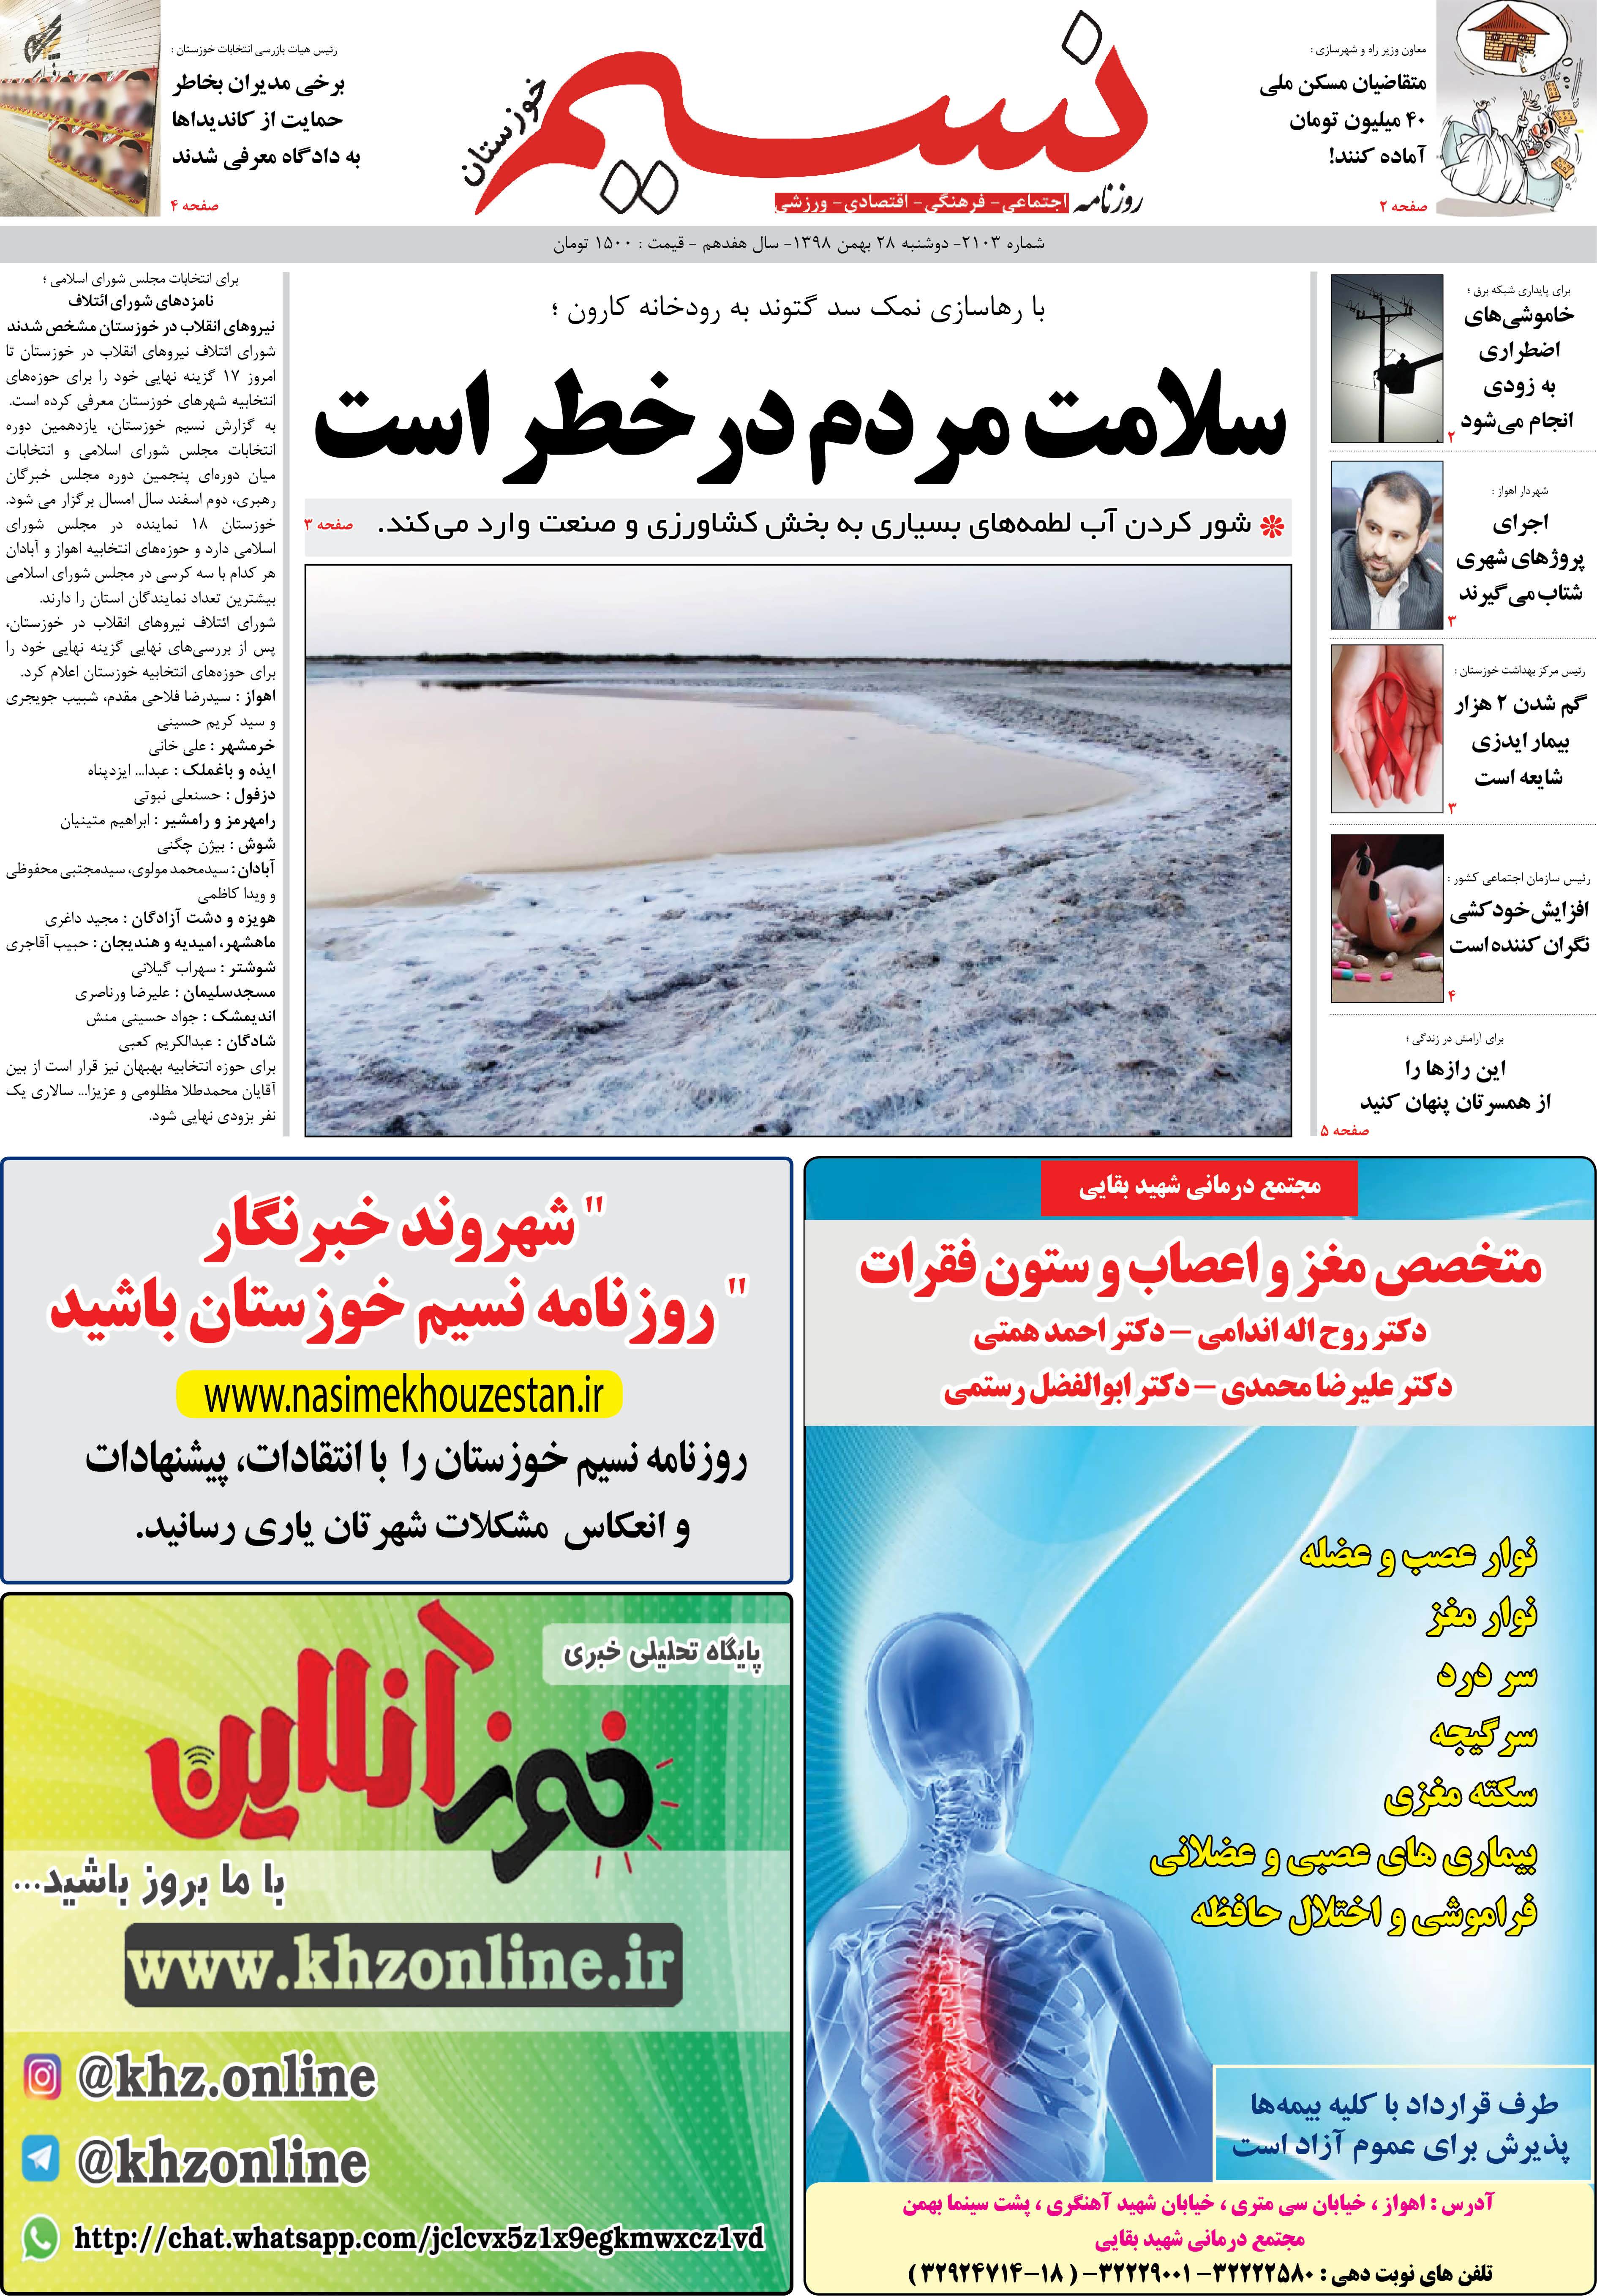 صفحه اصلی روزنامه نسیم شماره 2103 